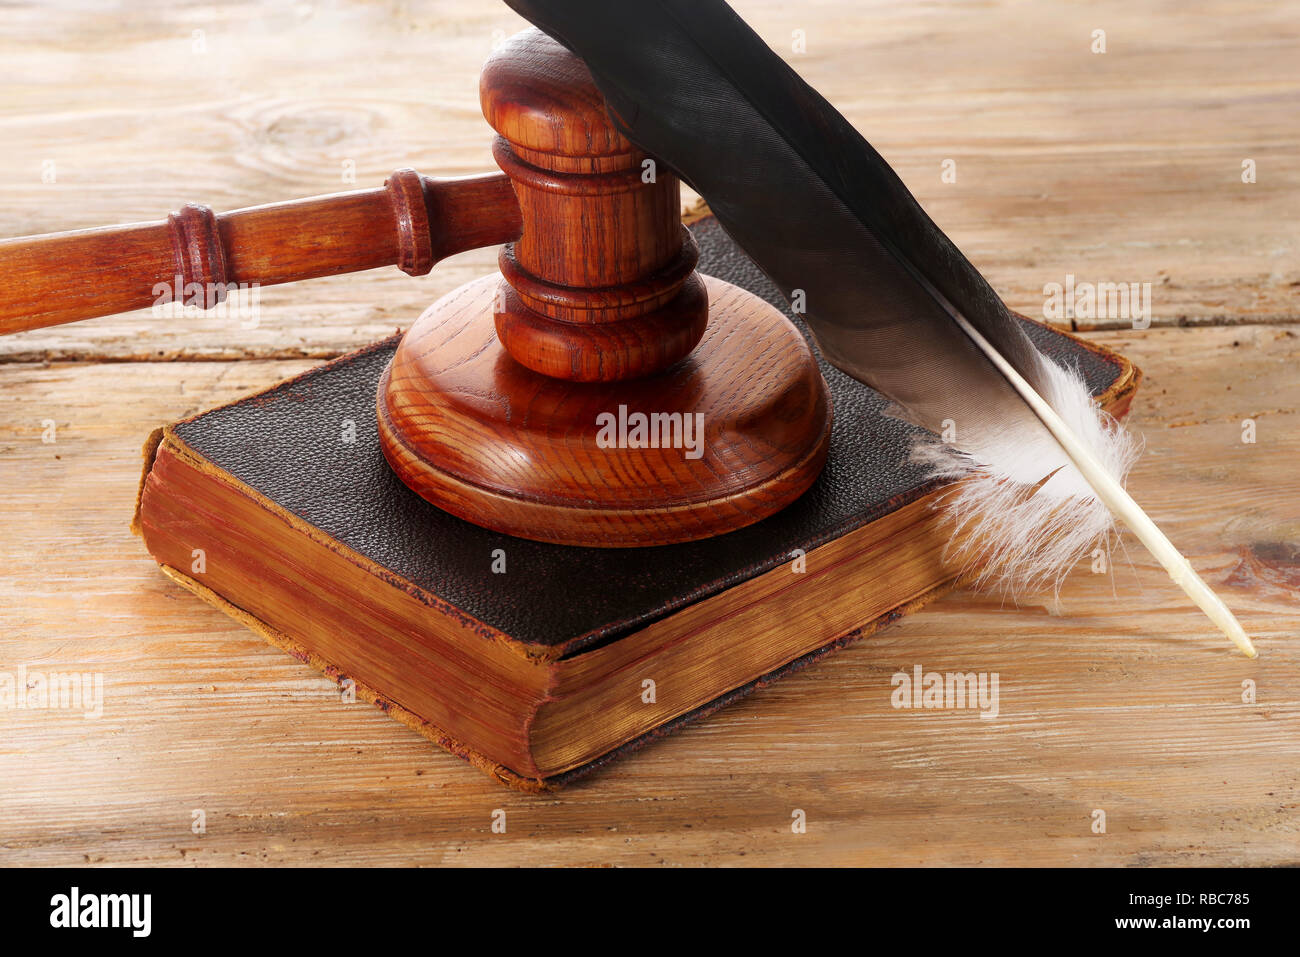 Marteau ou maillet de juge droit sur un bureau en bois Banque D'Images